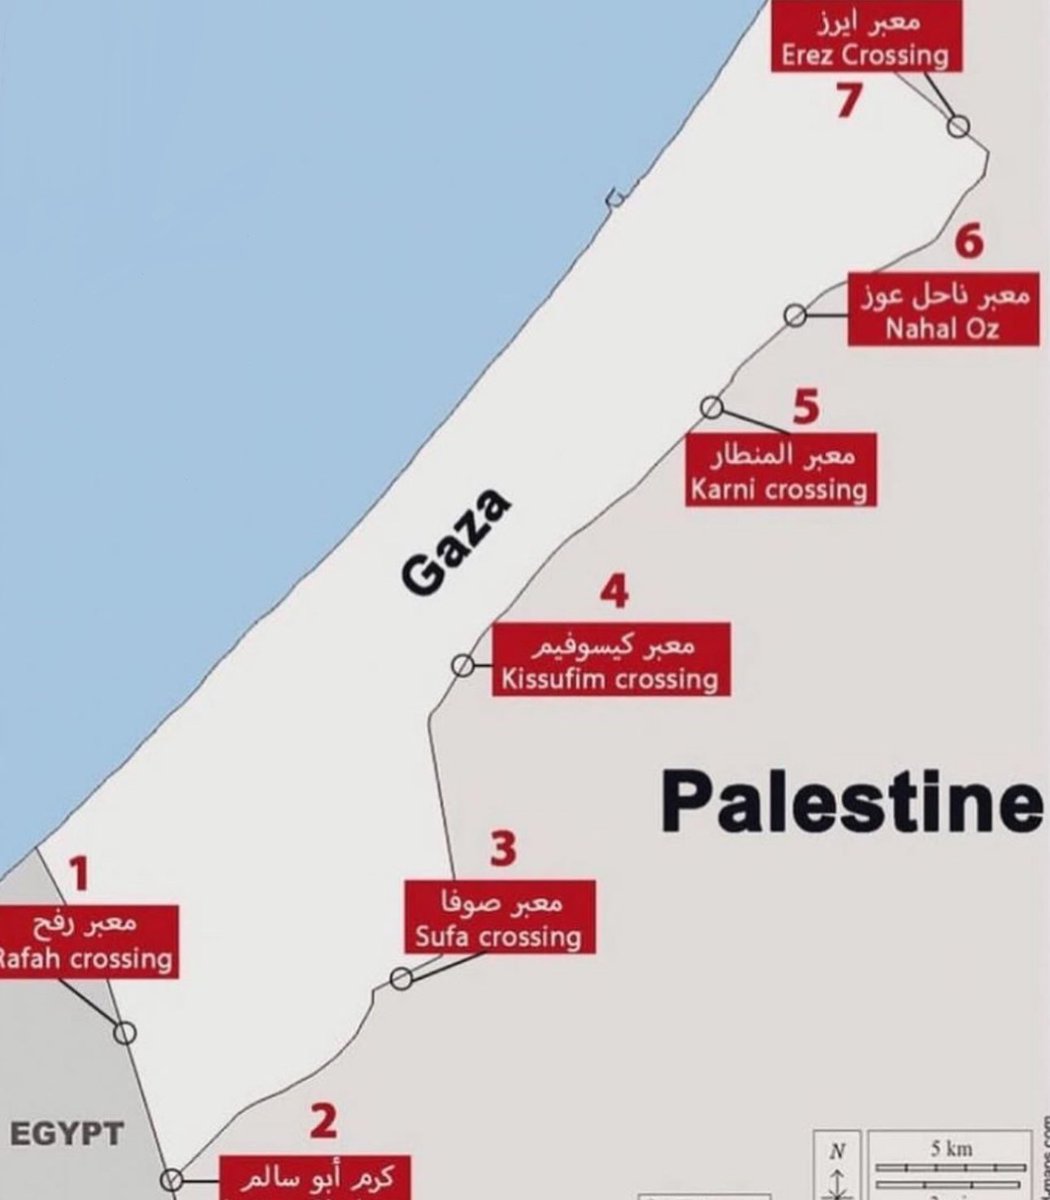 Gazze sınır kapıları açılsın: 1- Rafah 2-Abu Salim 3-Sufa 4-Kissufim 5-Karni 6-Nahal Oz 7- Erez #HandsOffRafah